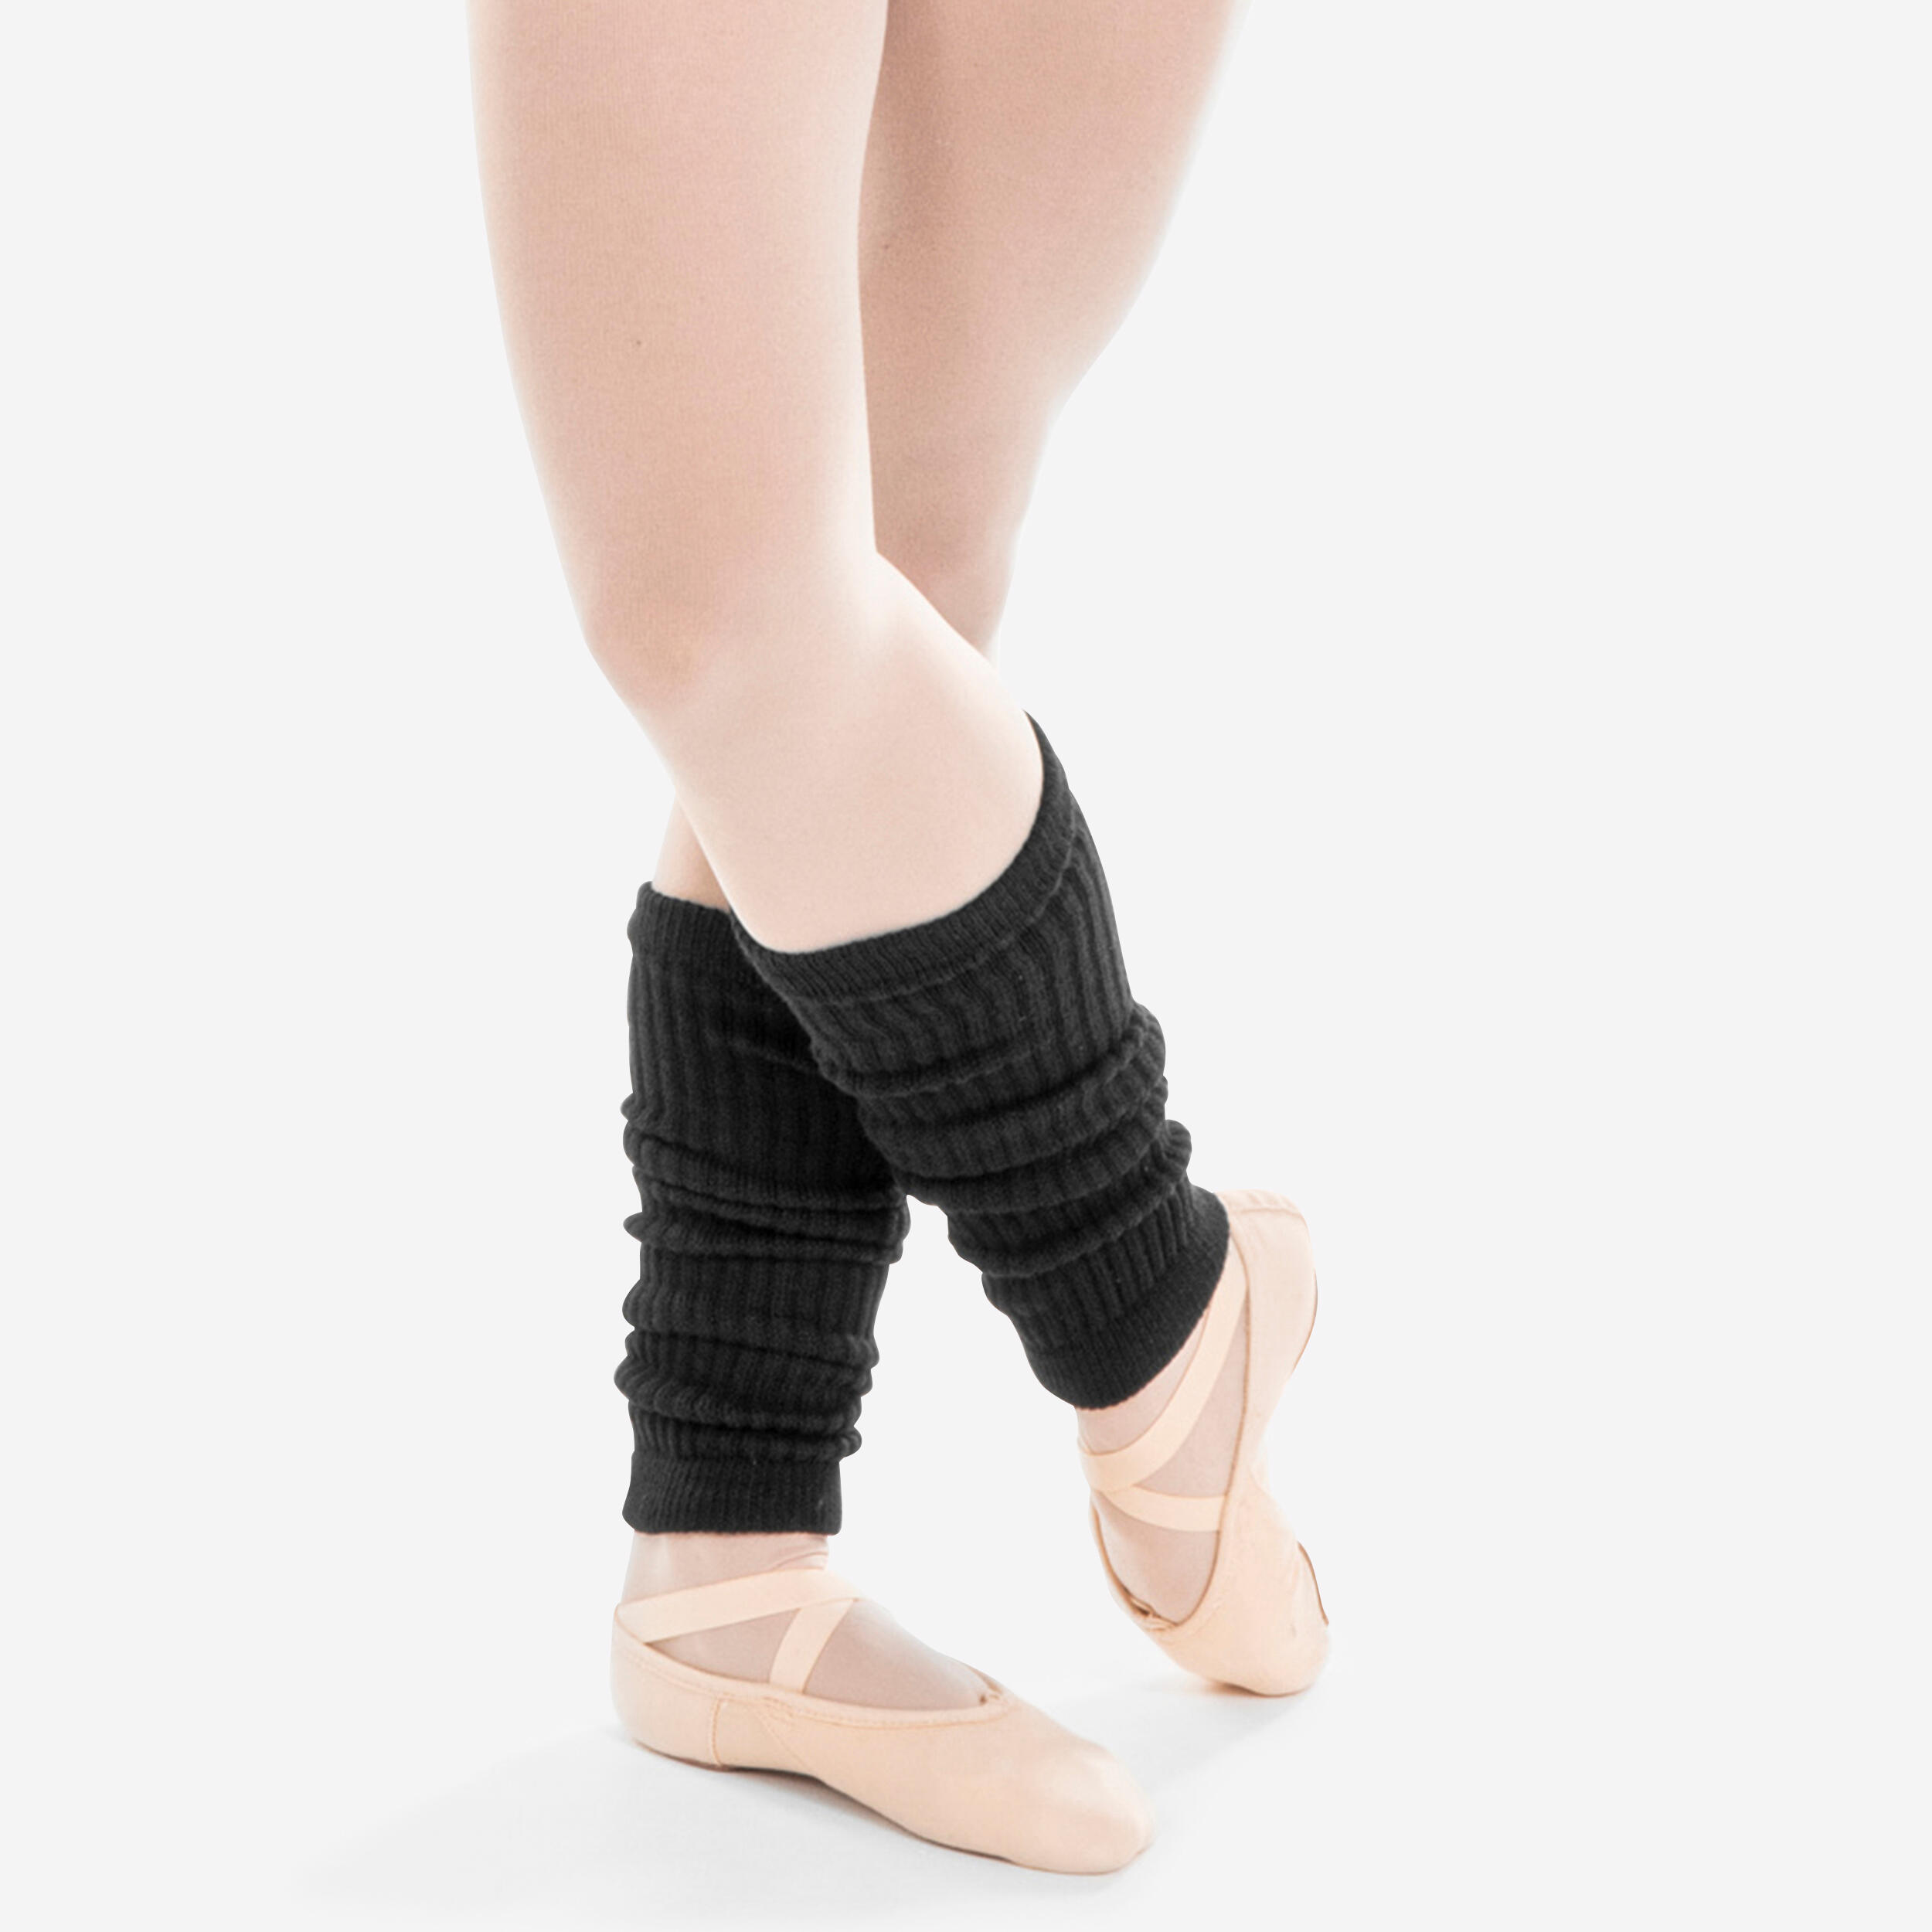 Girls' Ballet and Modern Dance Leg Warmers - Black 1/5